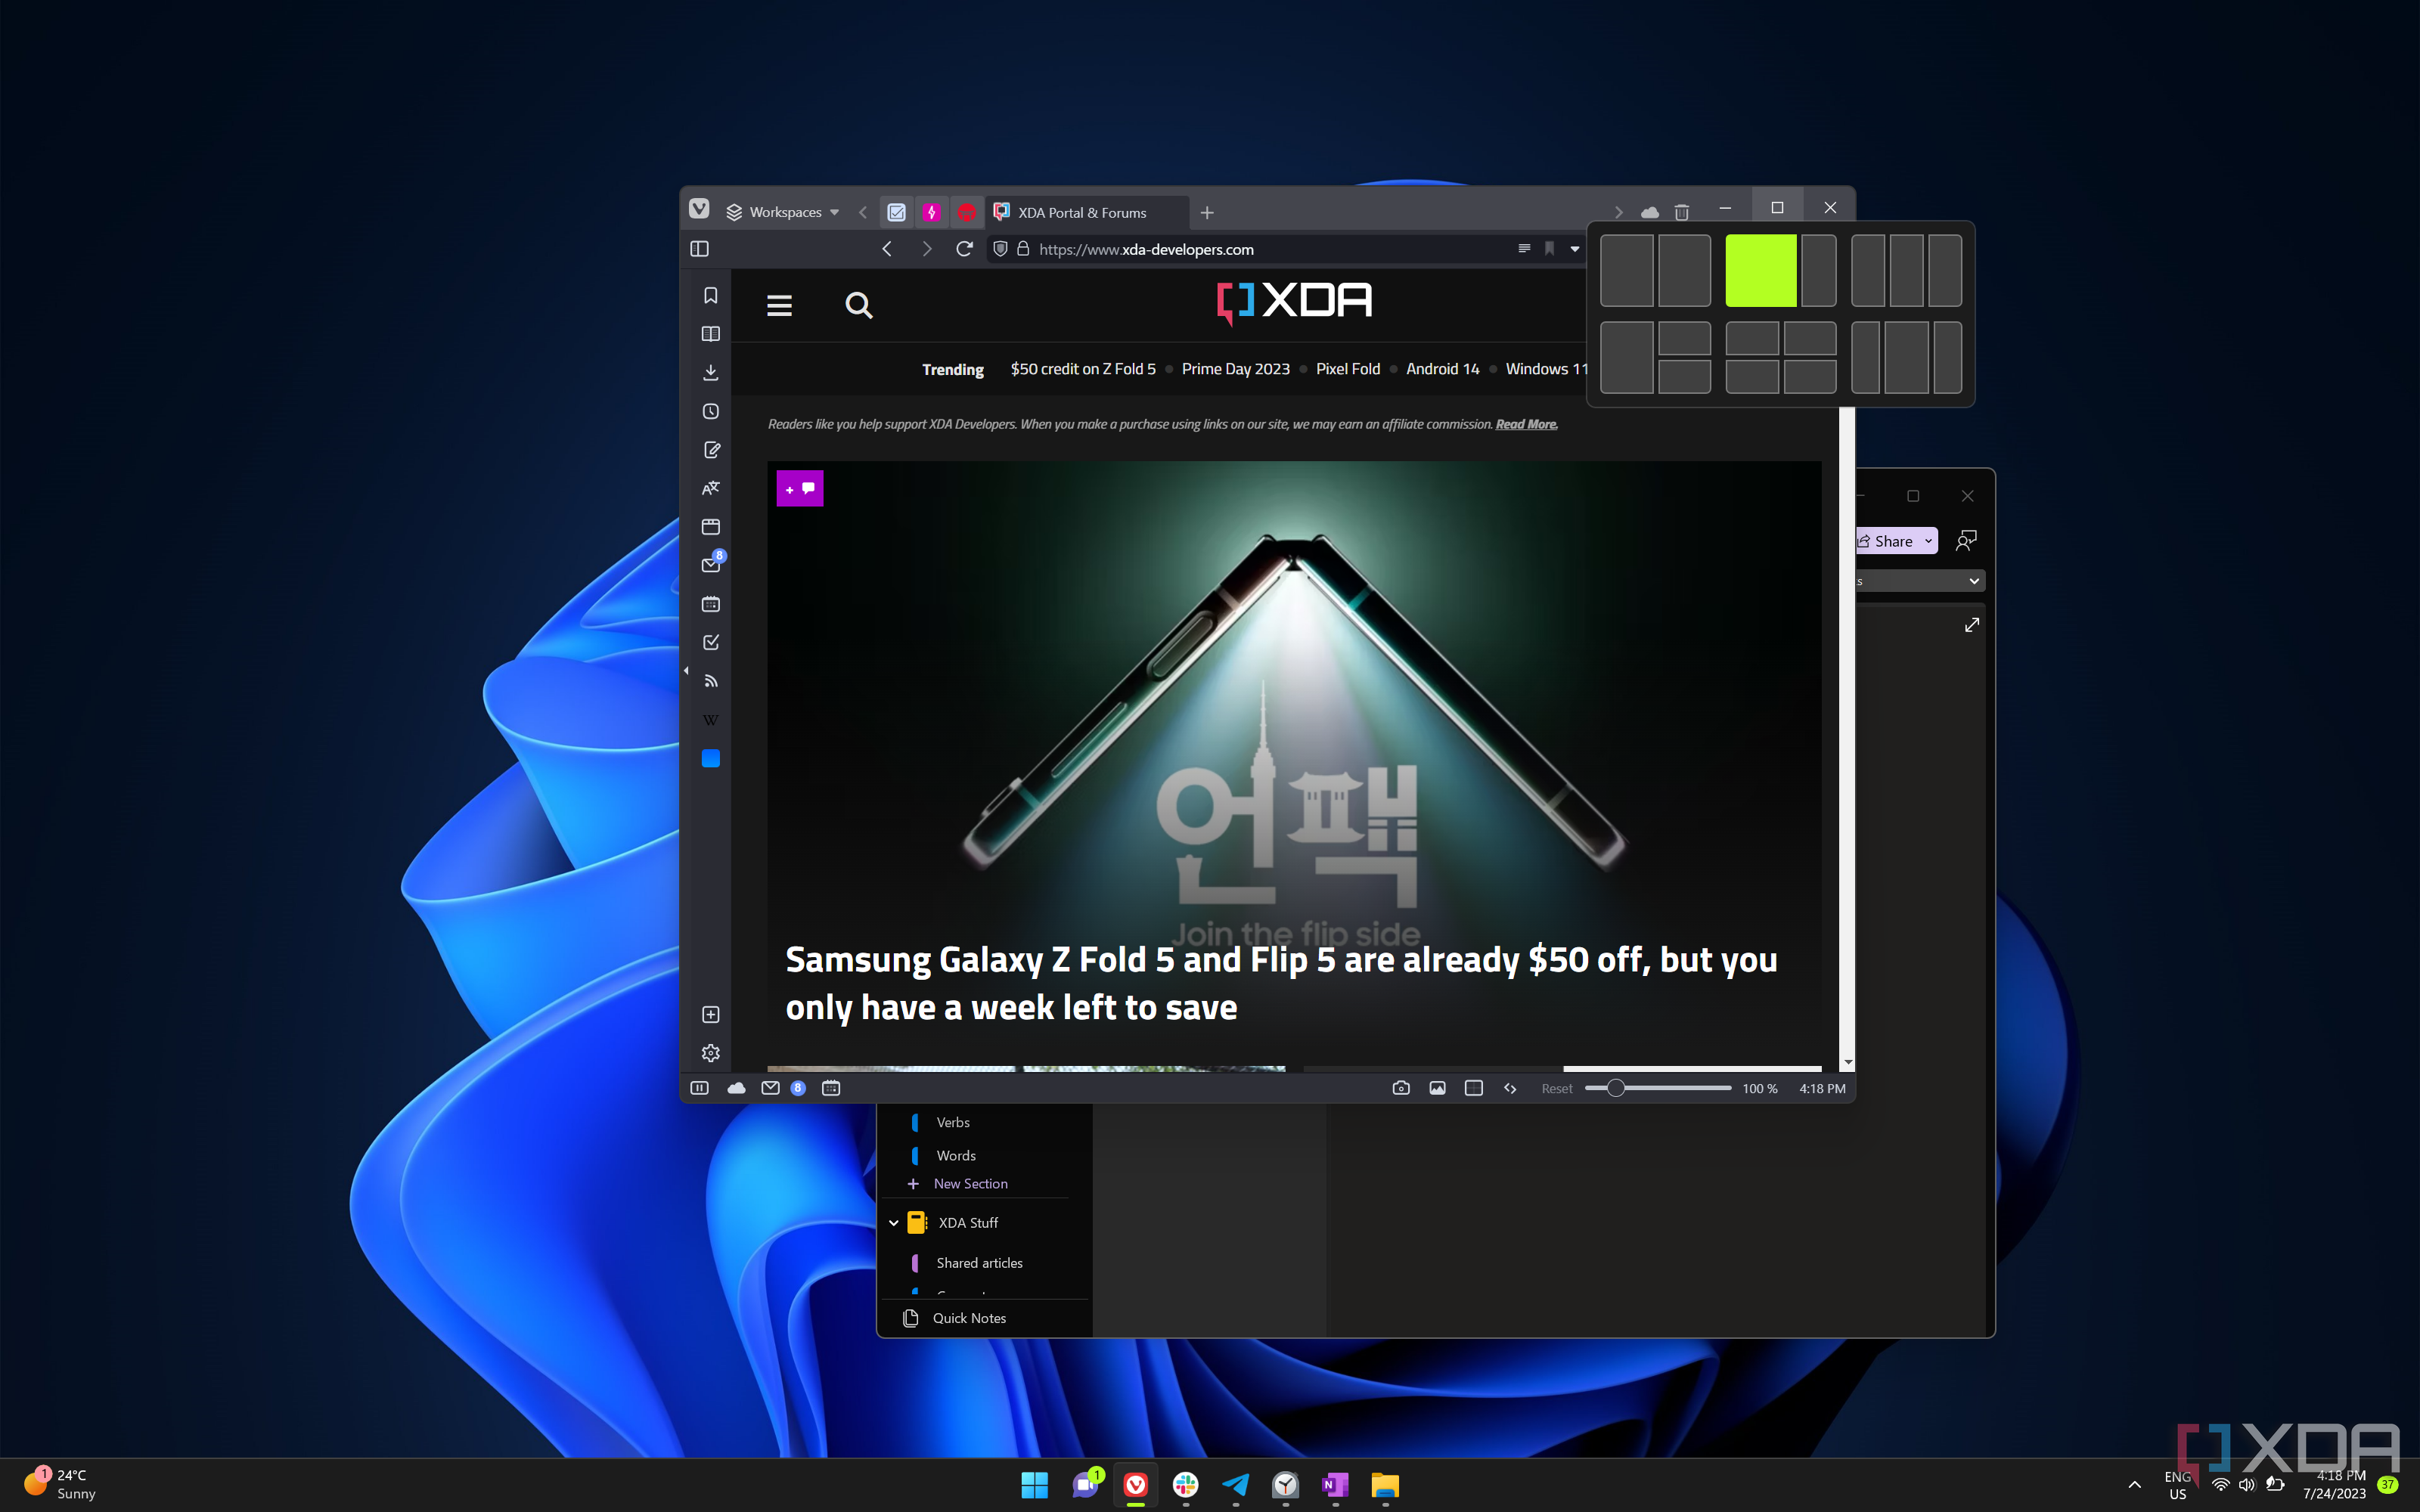 Снимок экрана рабочего стола Windows 11 с окном браузера Vivaldi и открытым OneNote, показывающий пользовательский интерфейс Snap Layouts, отображаемый при наведении курсора мыши на значок восстановления.